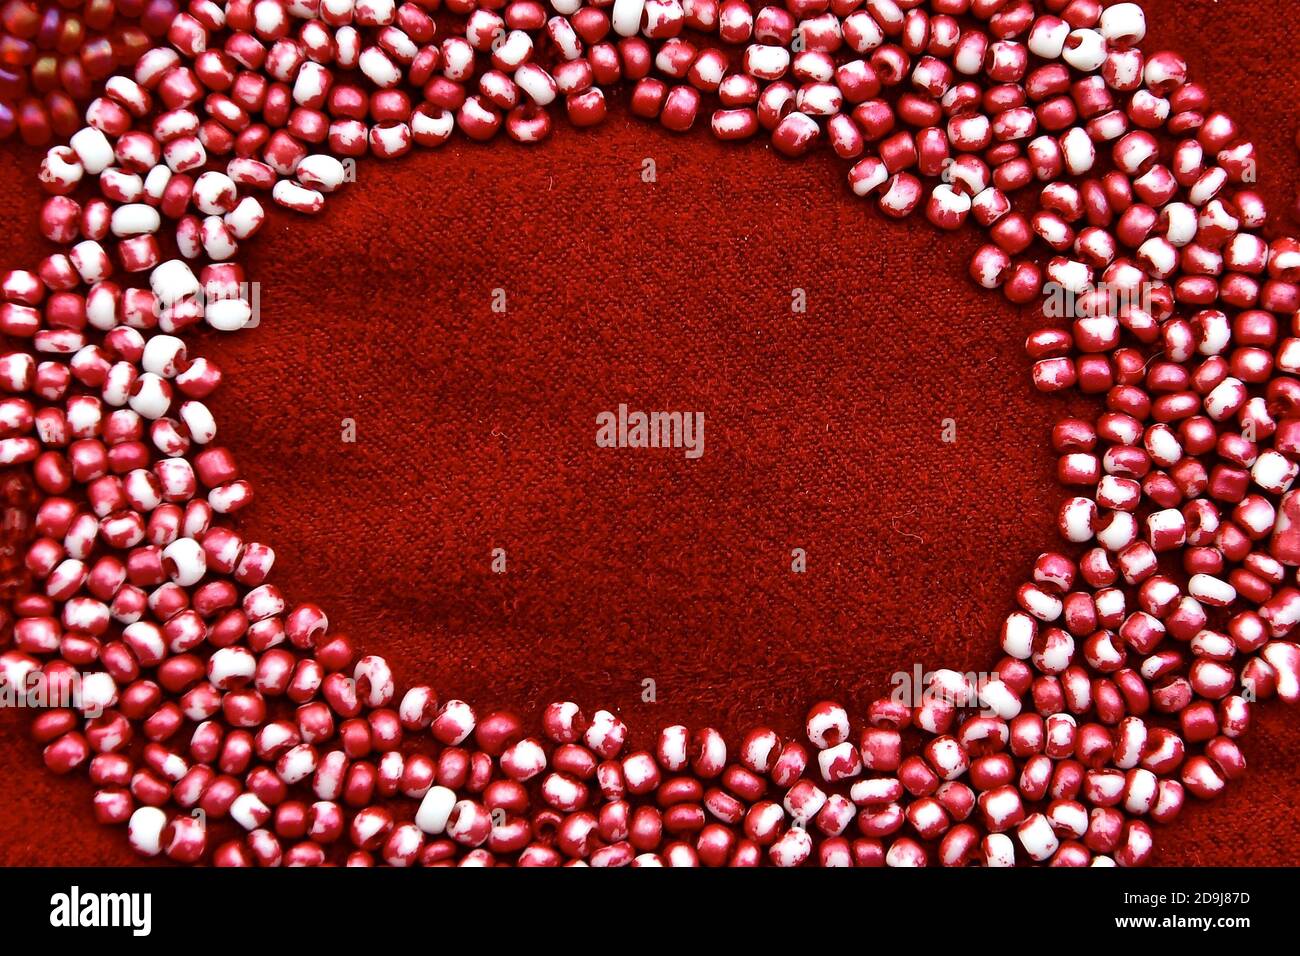 Makro-Bild von kleinen Glasperlen auf einem roten Stoff in einer ovalen Rahmenform genäht. Stockfoto